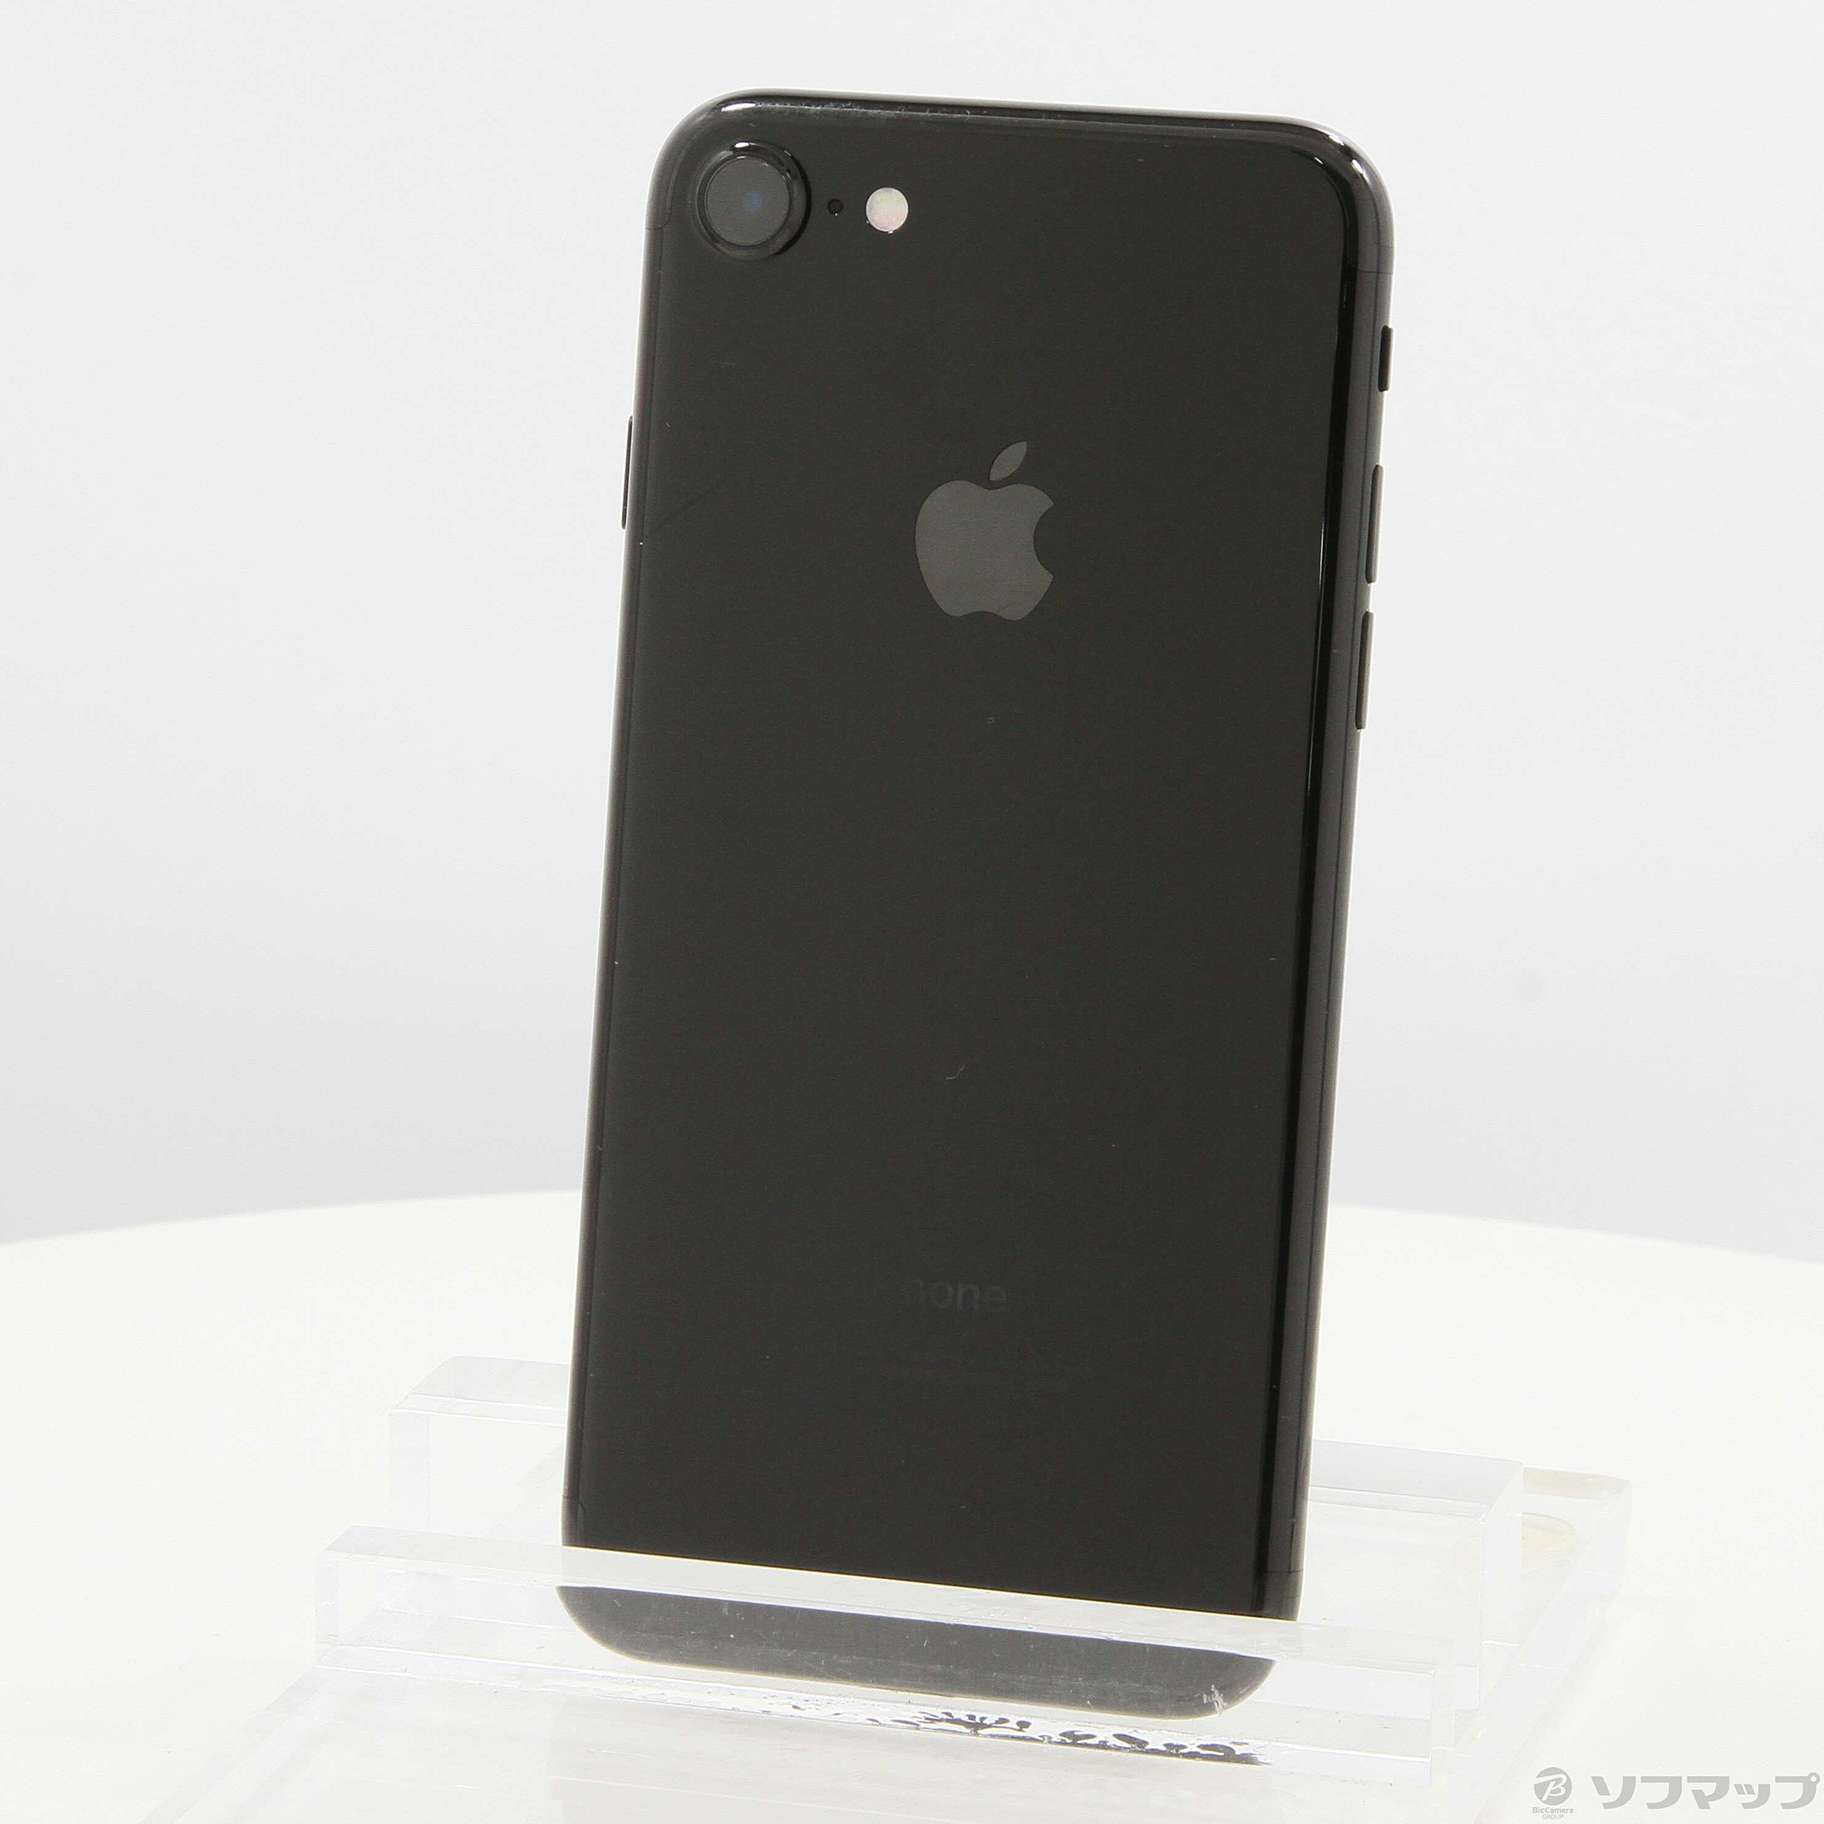 【スマホ】Apple iPhone7 128GB JetBlack SIMフリー